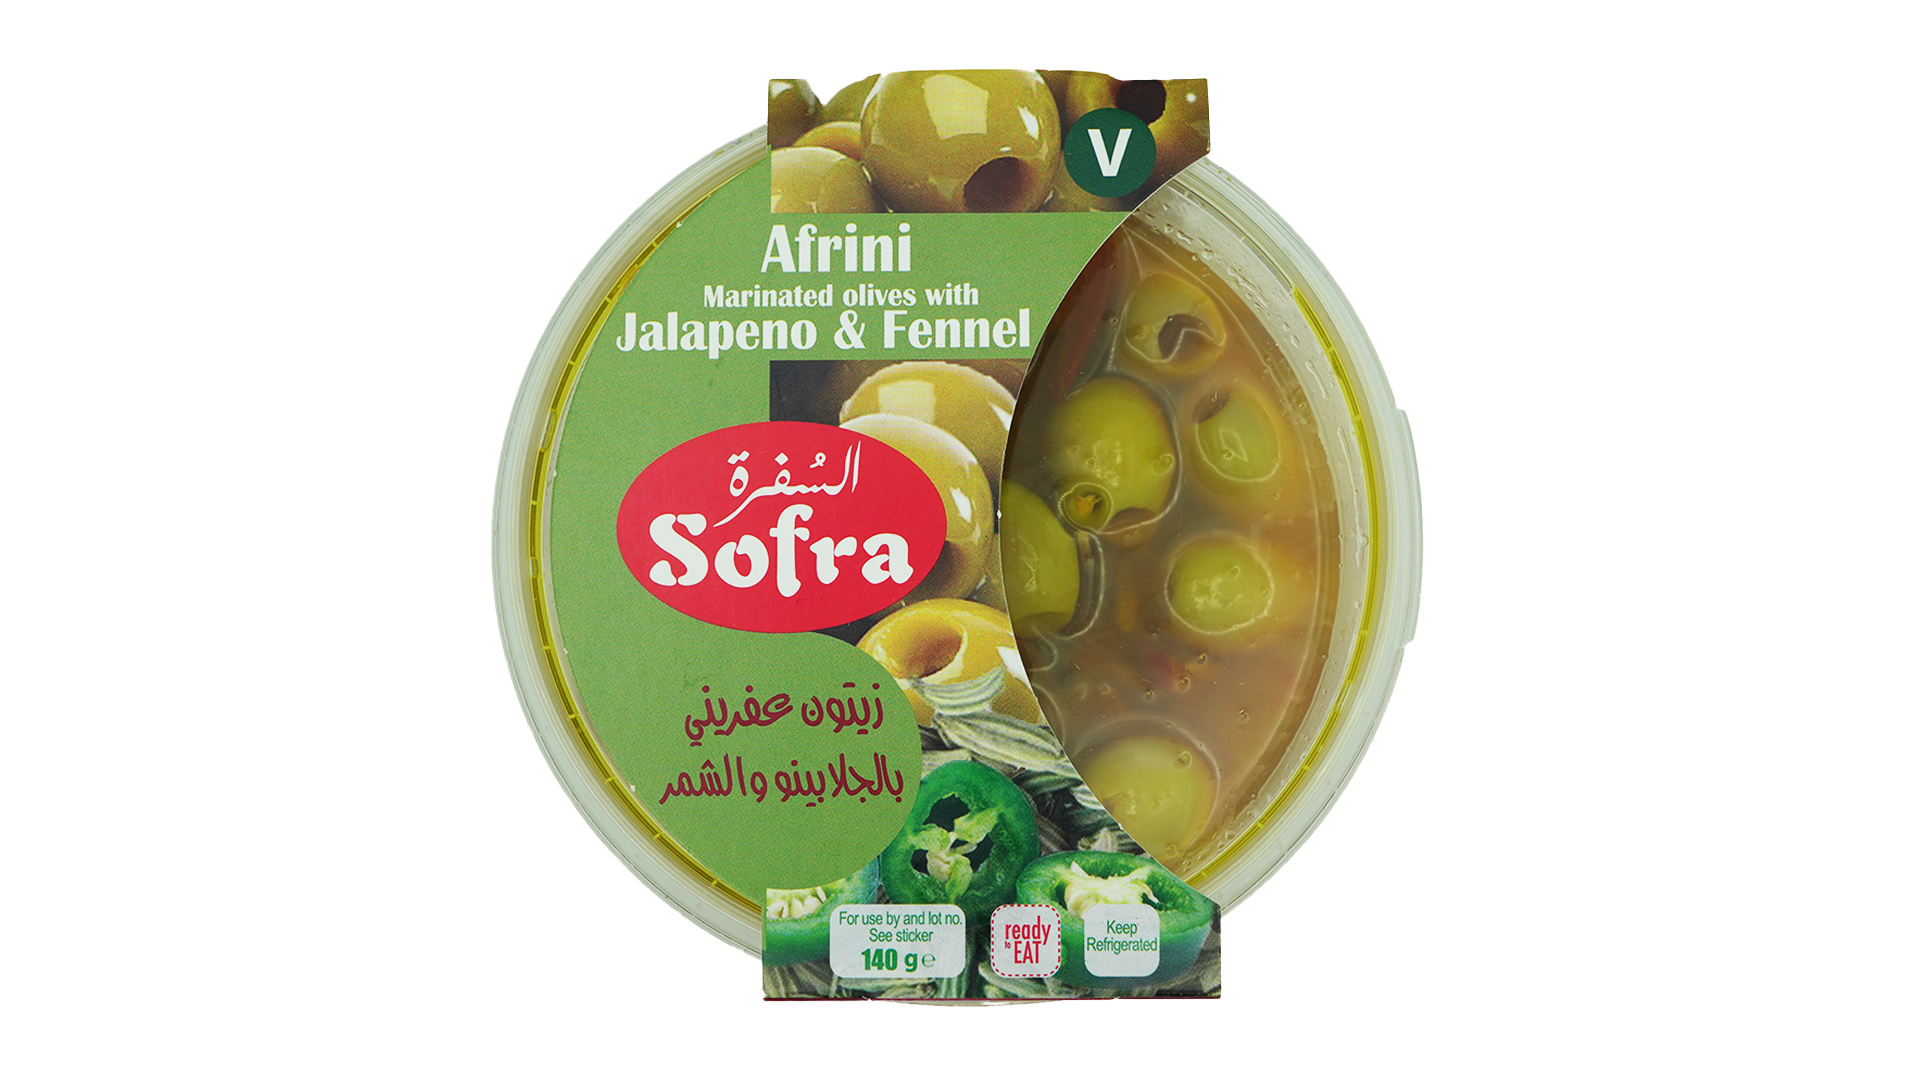 Sofra afrini marinated olives with jalapeno and fennel 140g 1